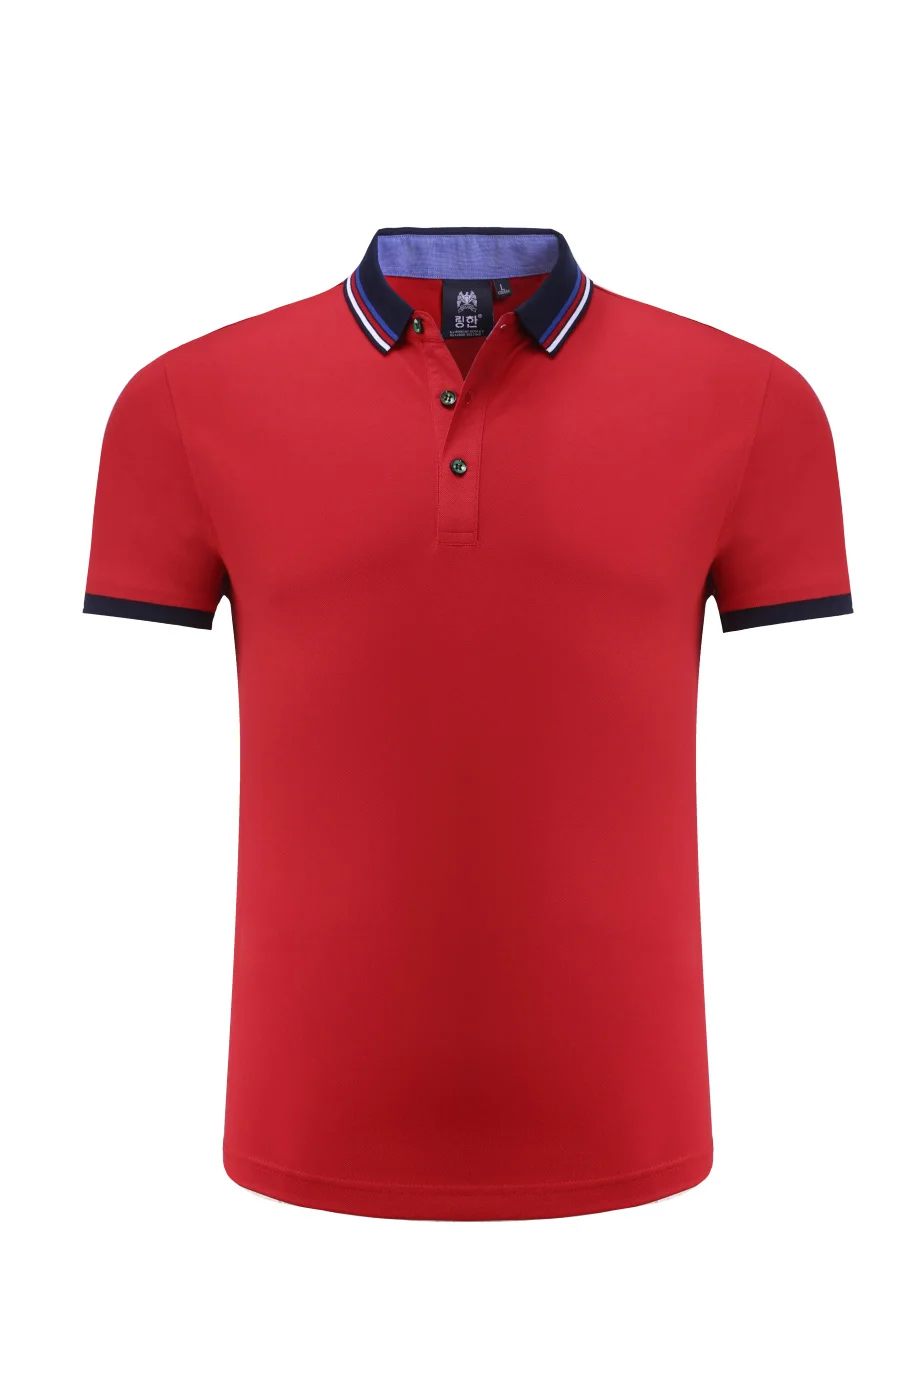 Новая футболка поло мужская Высококачественная рубашка с коротким рукавом с воротником под заказ логотип универсальная мужская Спортивная футболка для гольфа теннисная одежда